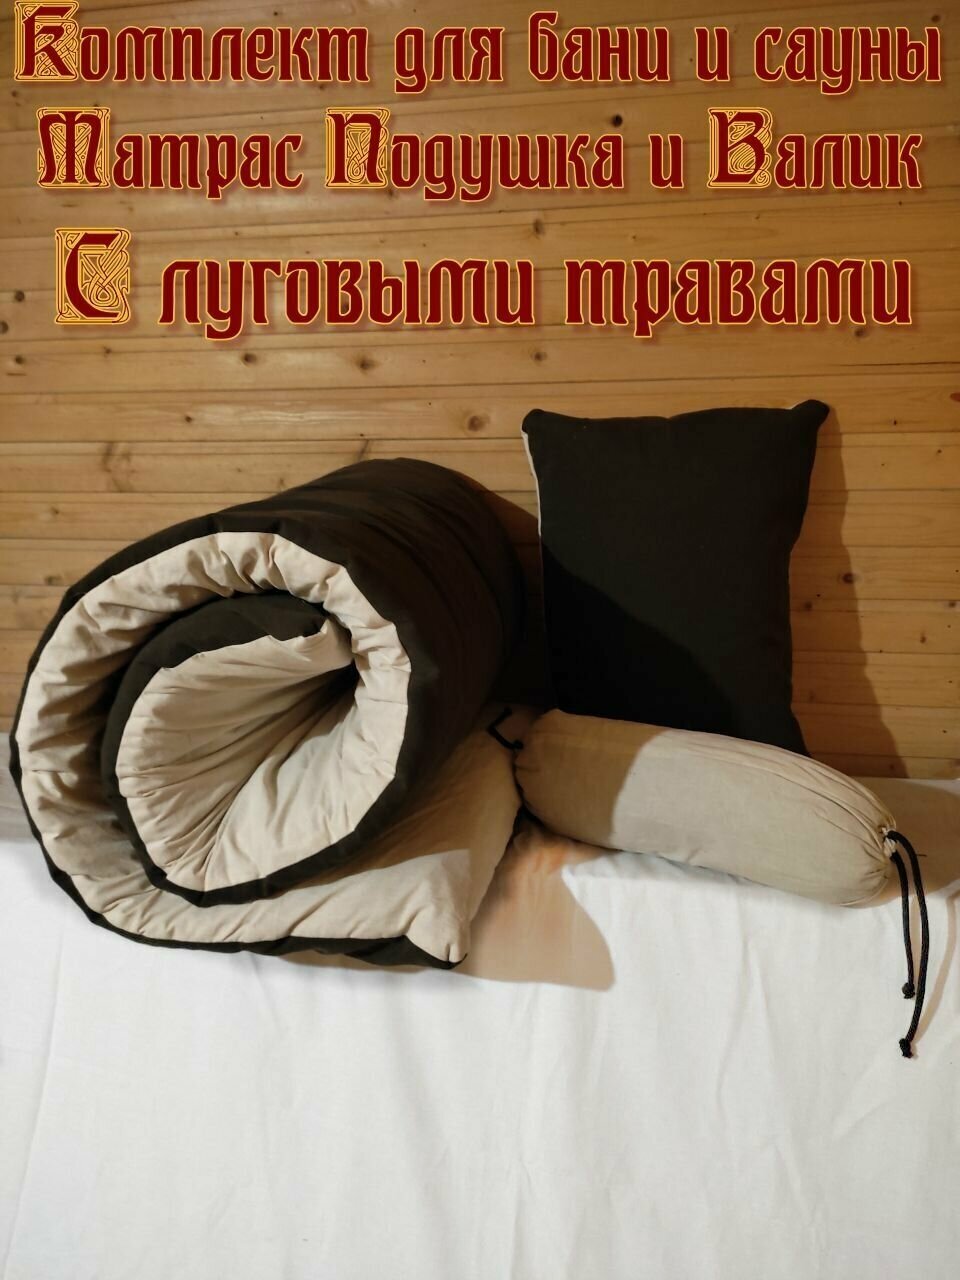 Банный комплект матрас подушка и валик с луговыми травами